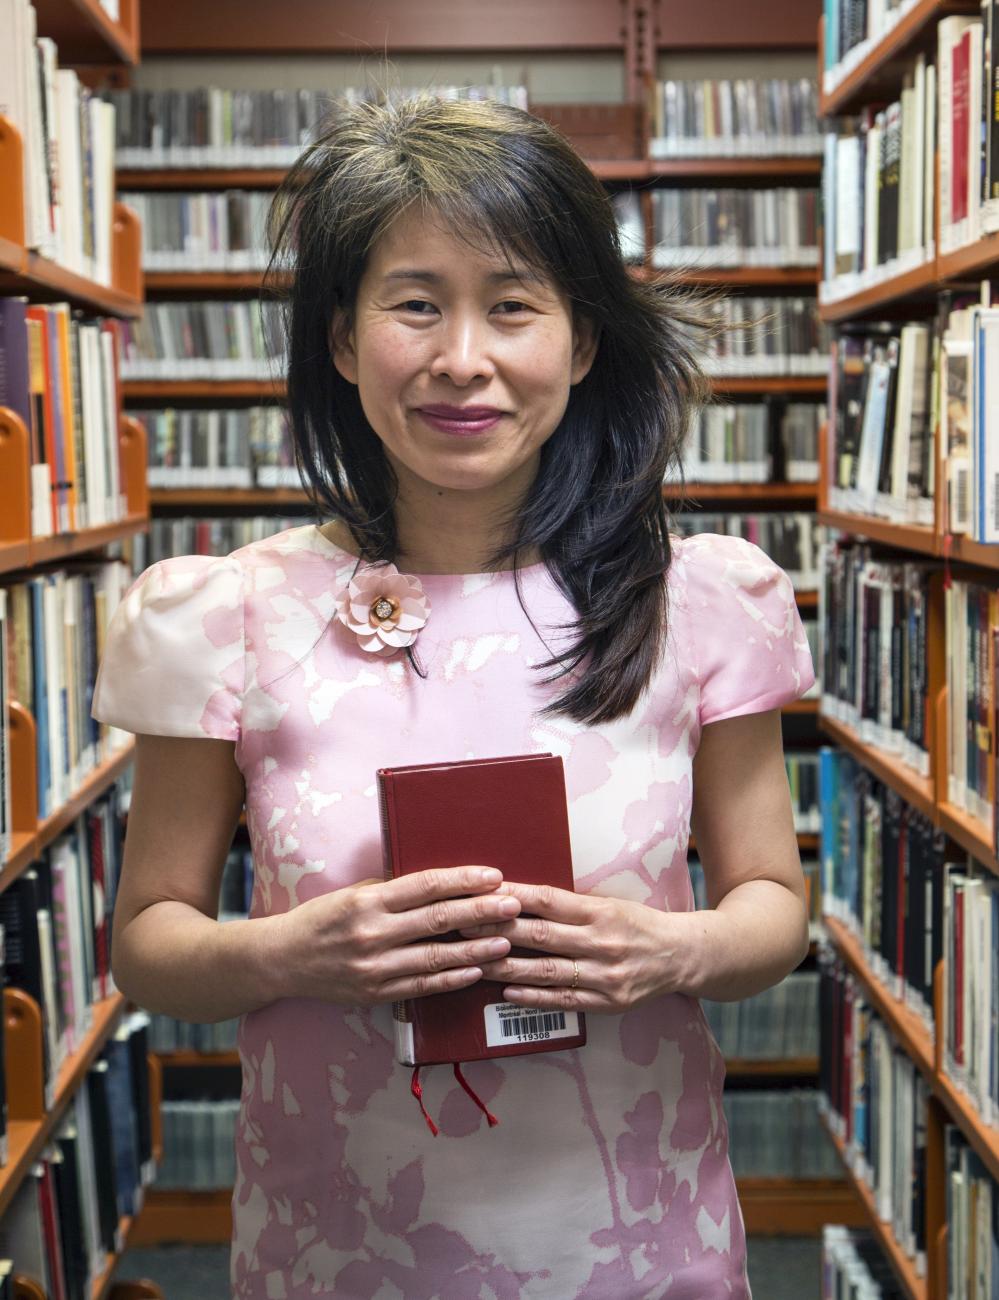 Kim Thúy Ly Thanh, avec un livre à la main, portant une robe rose et entourée d'étagères.